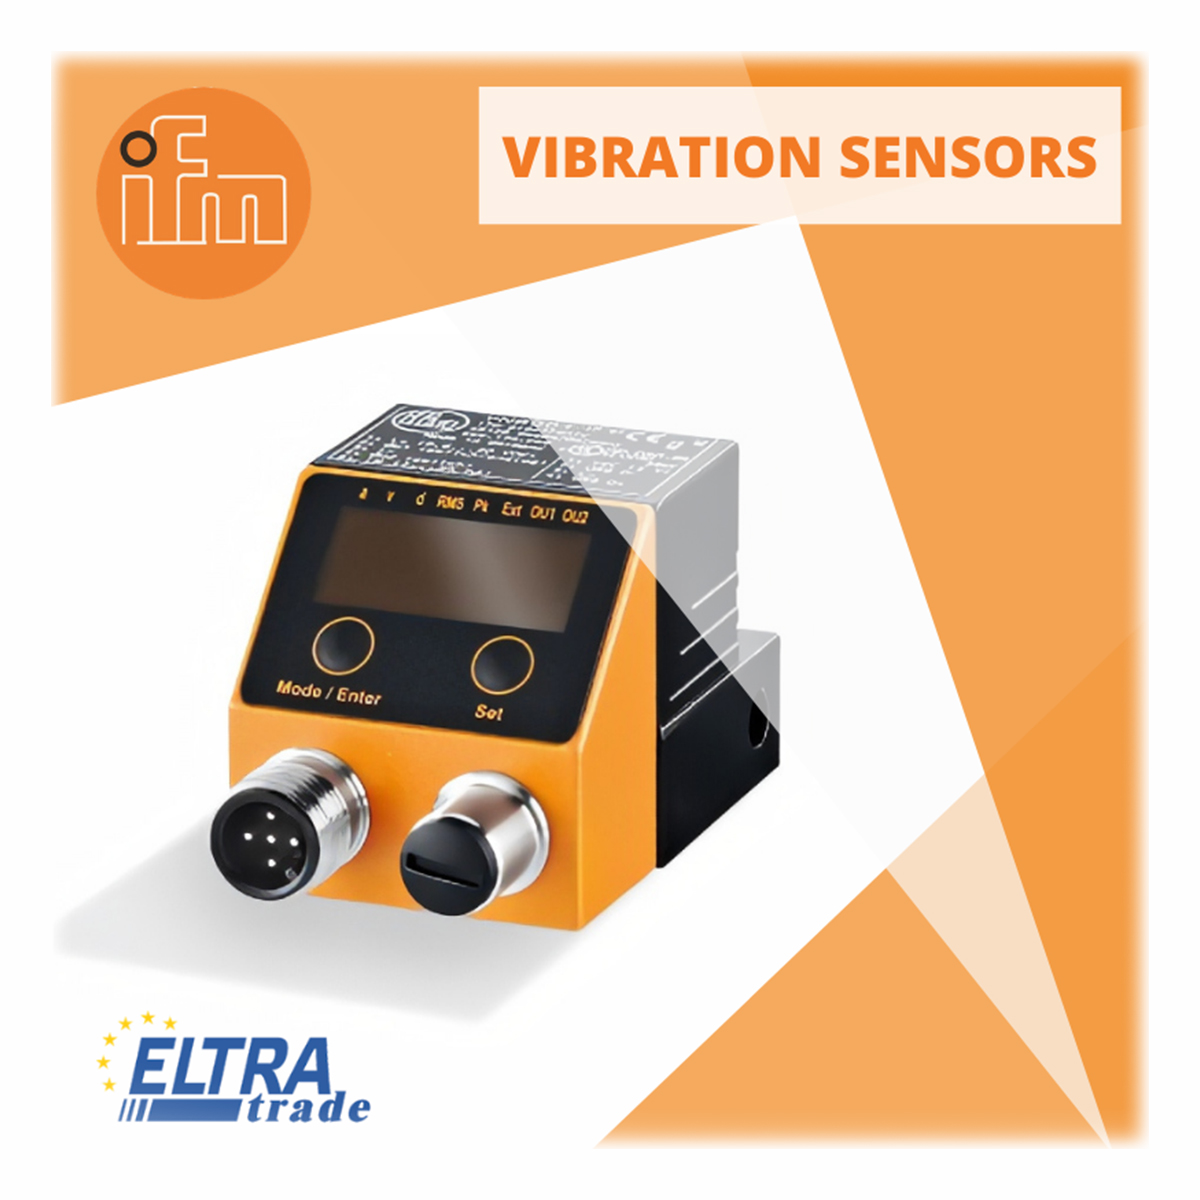 ifm vibration sensors photo